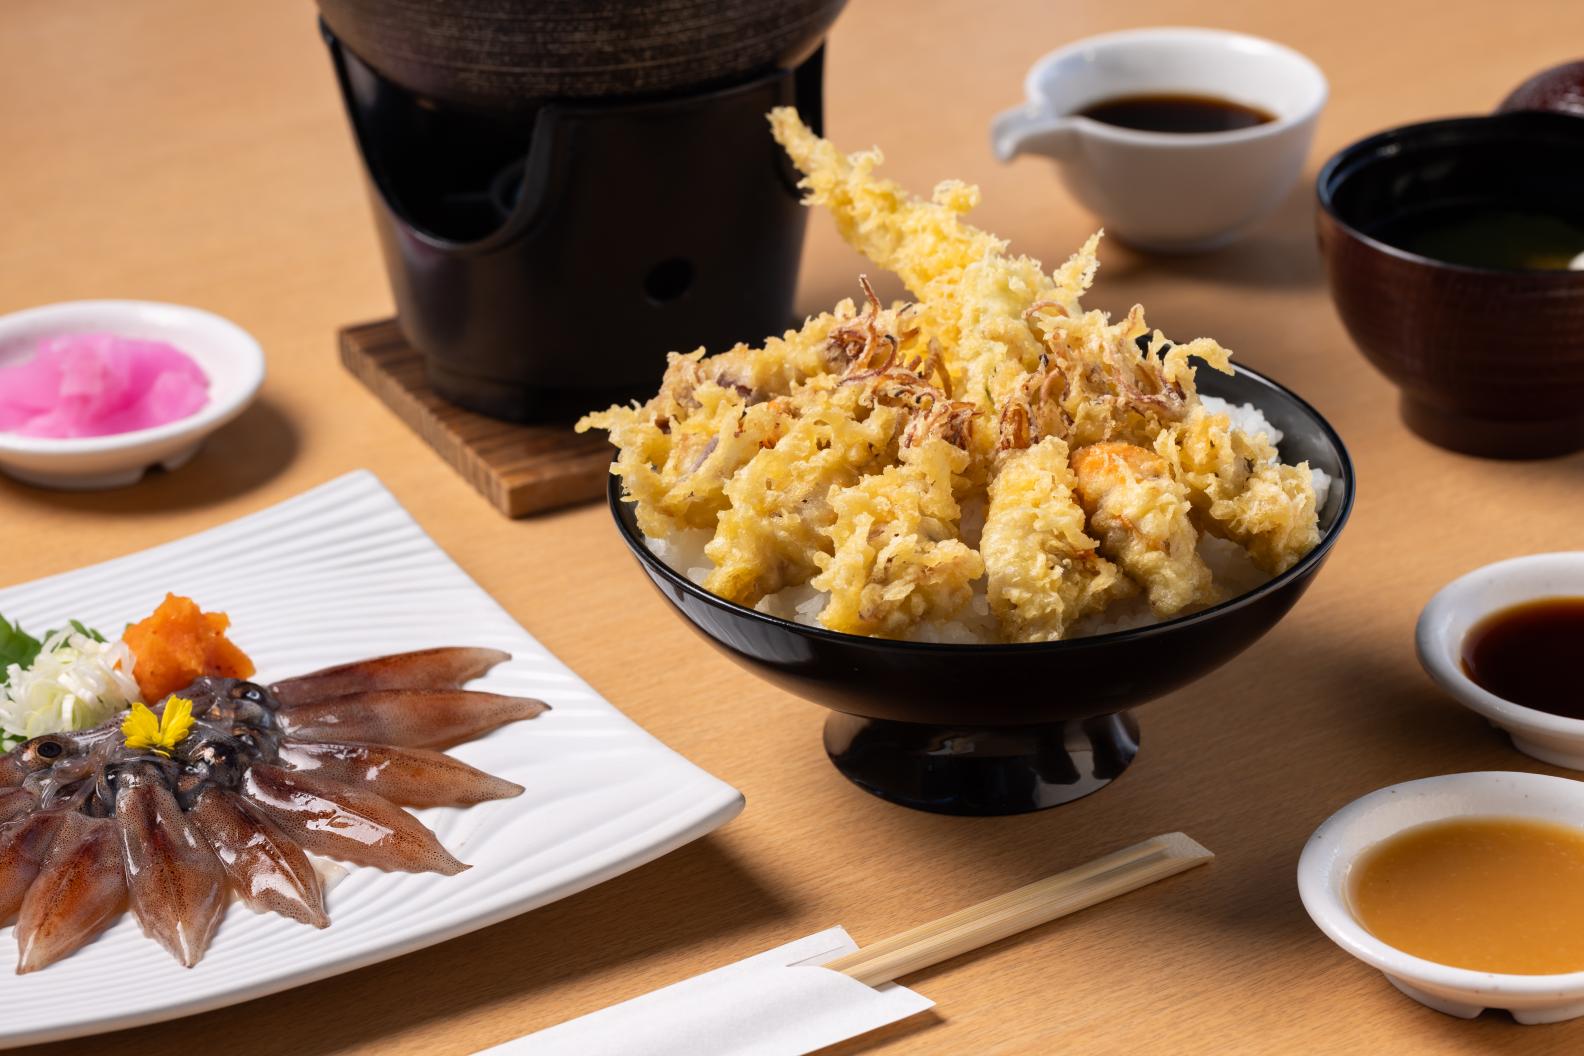 定番の桜煮やお刺身、天ぷら、しゃぶしゃぶなど様々なホタルイカメニューを楽しめます